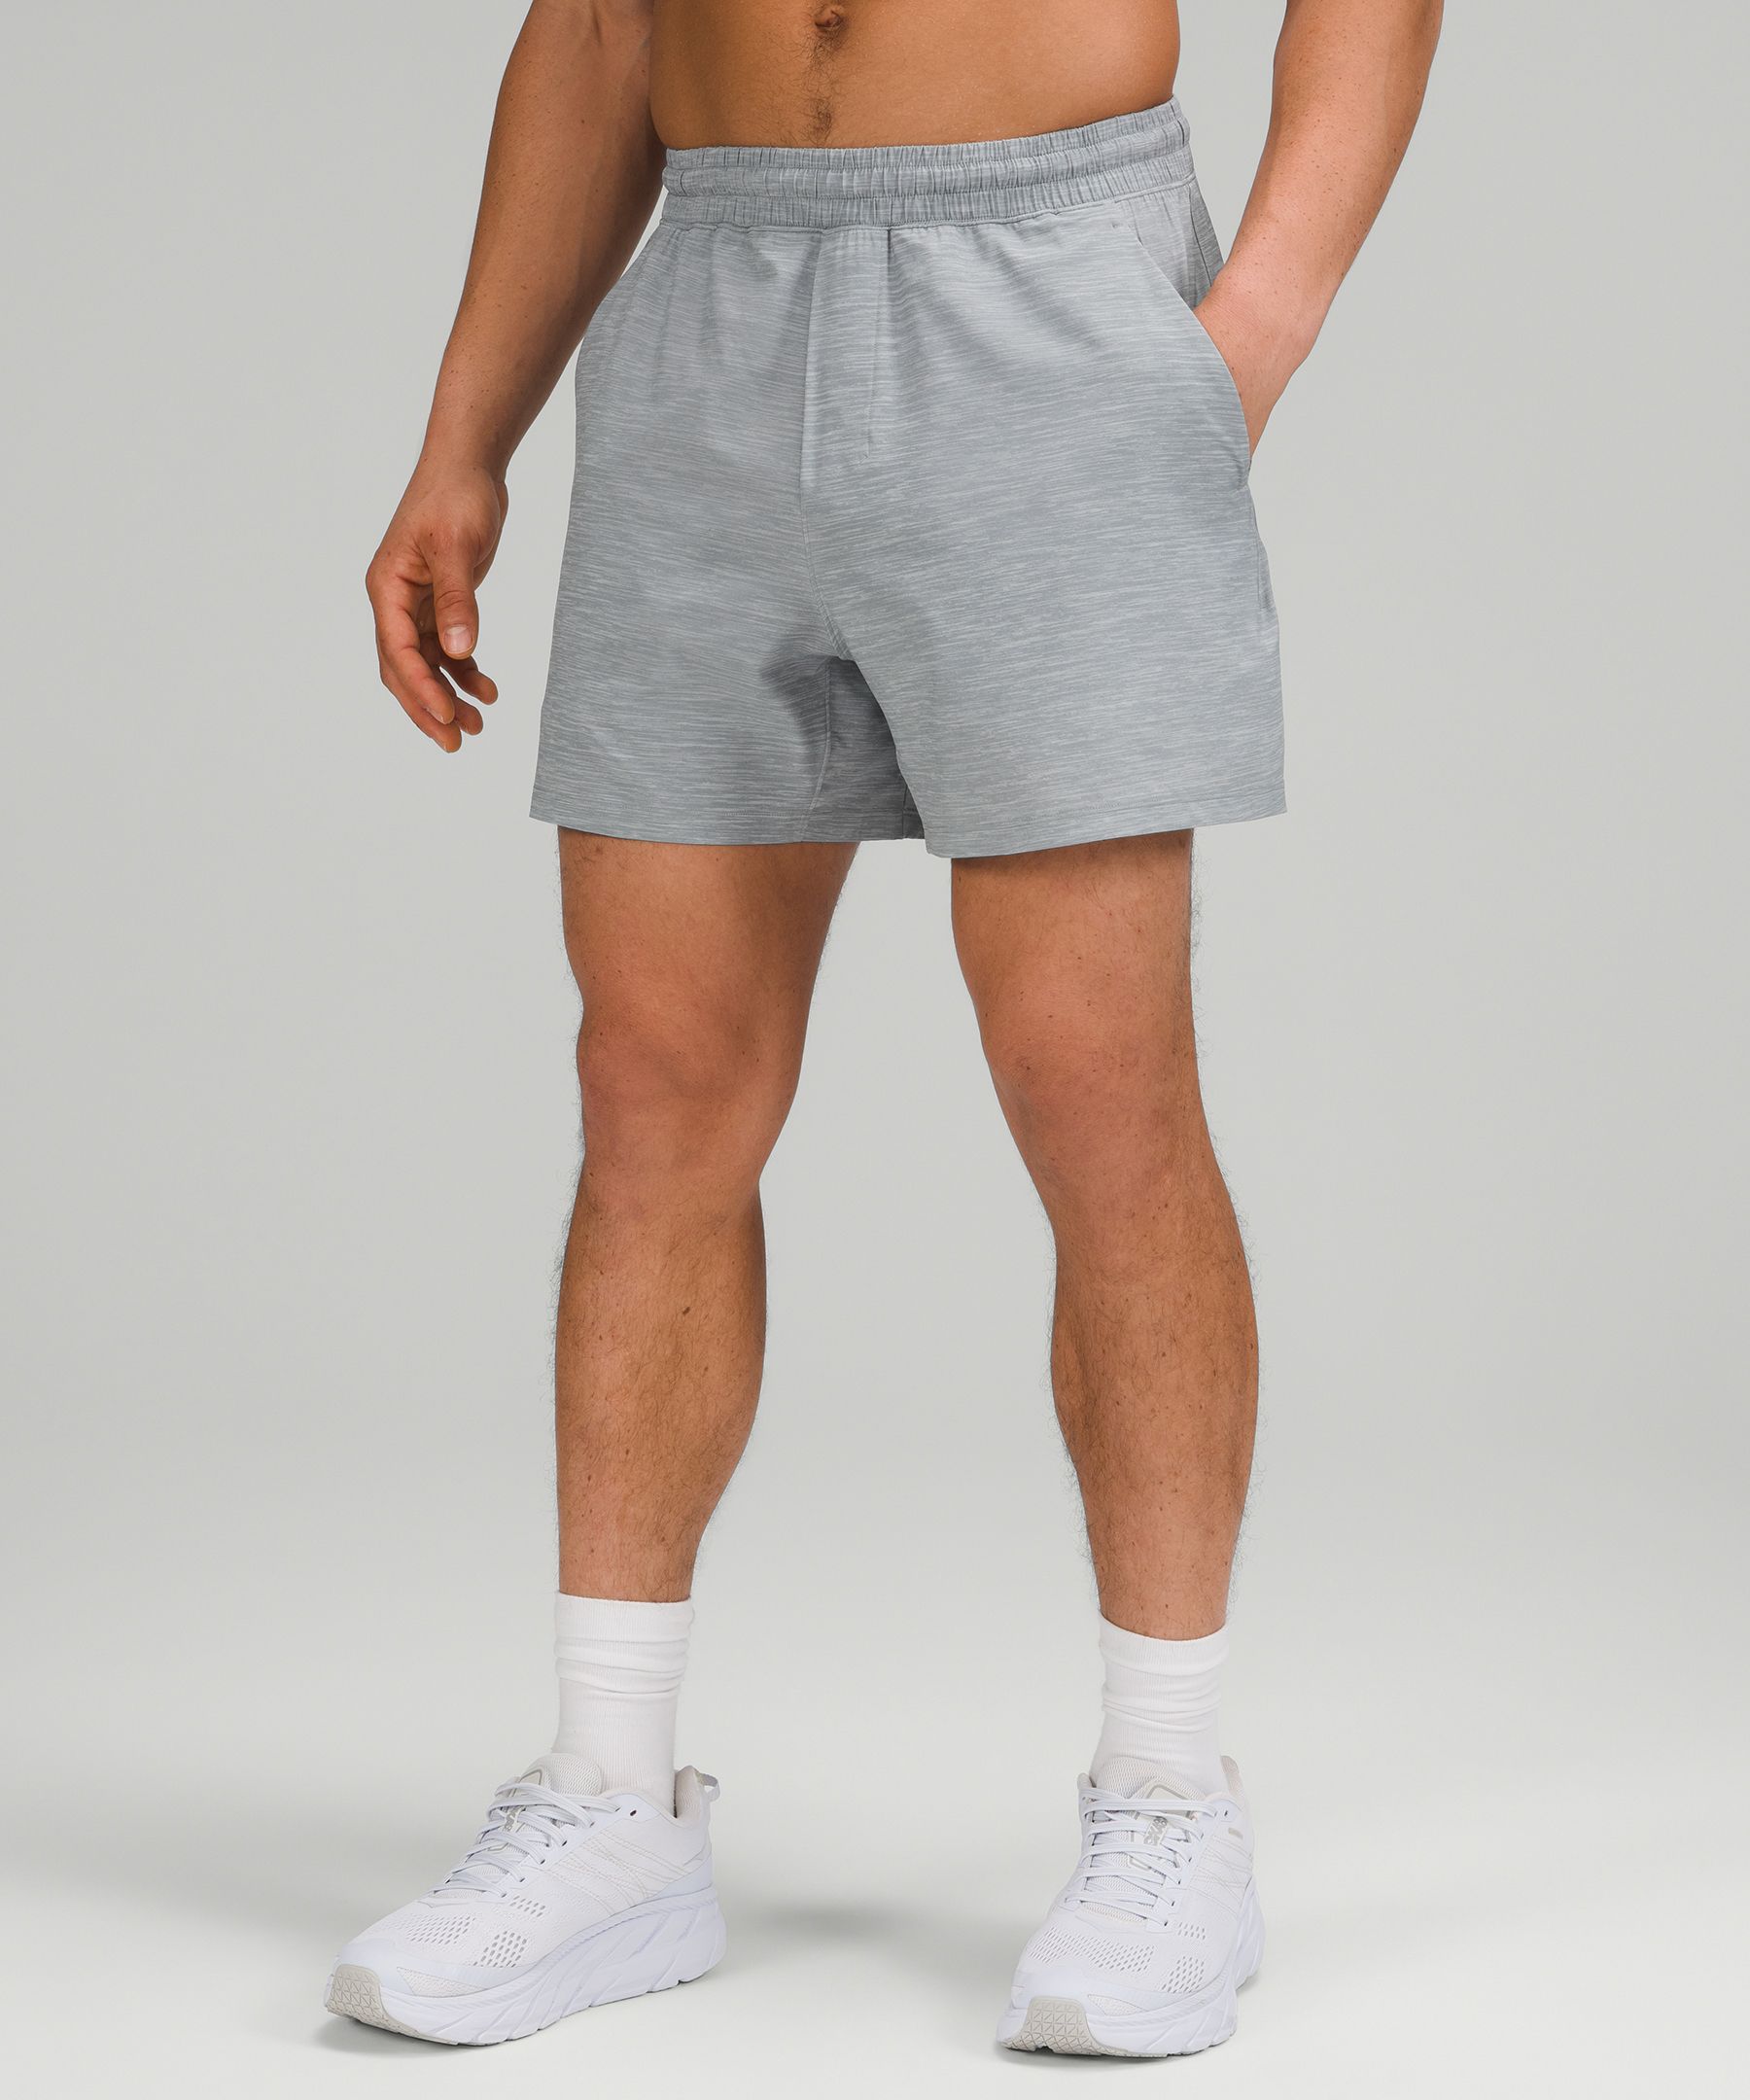 lululemon men's 5 inch shorts